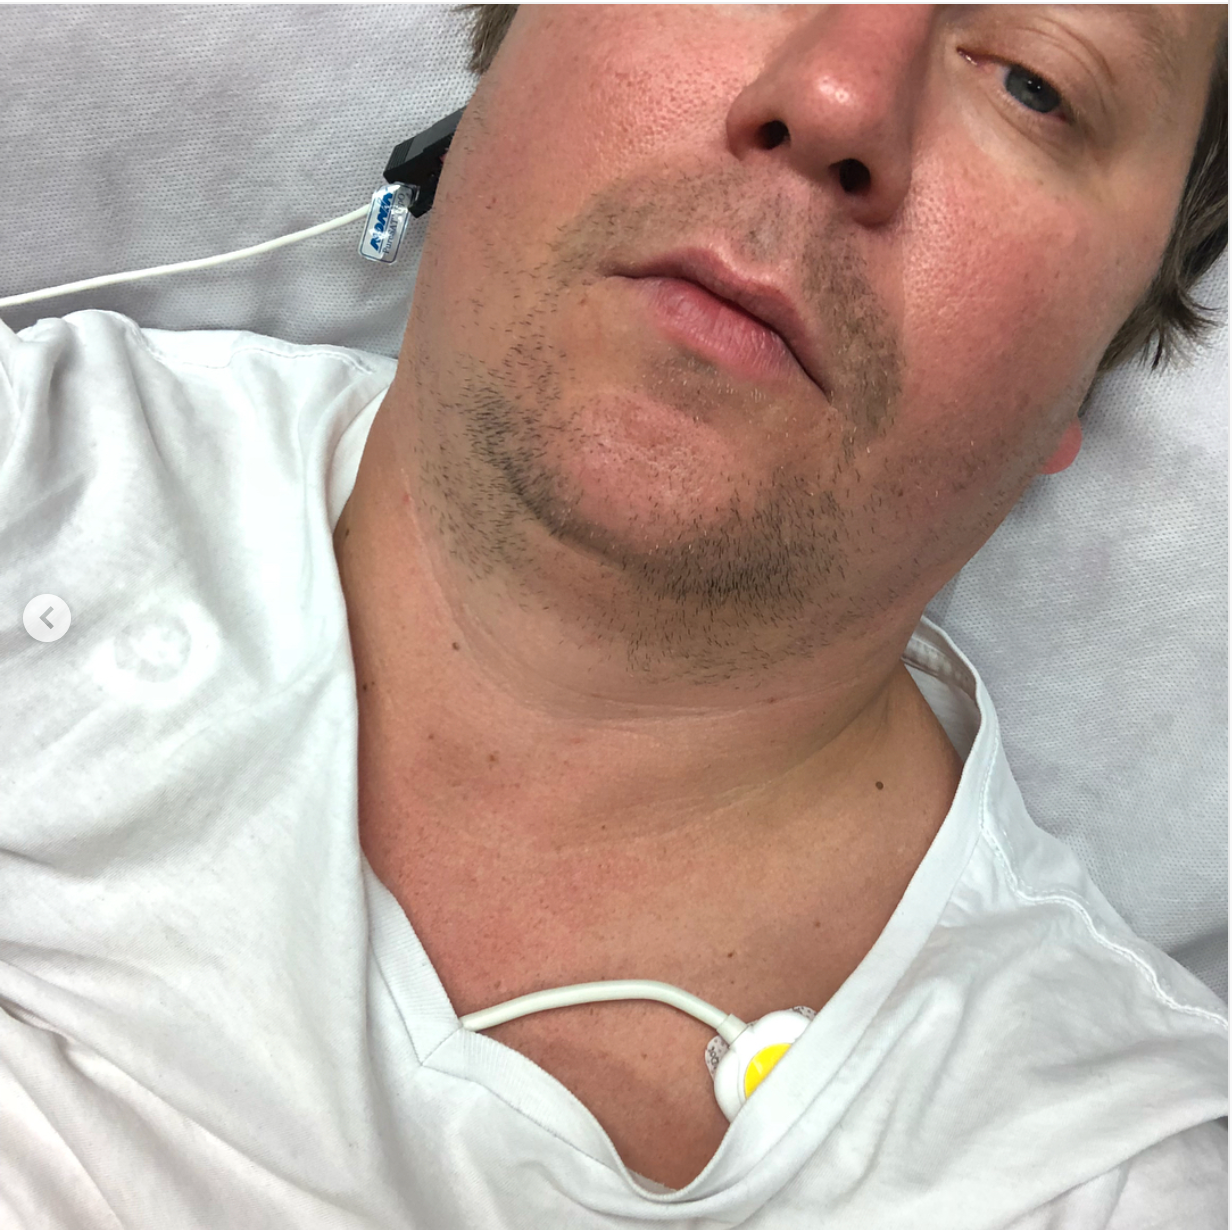 Patric Skoglund på sjukhuset: ”Jag är trött”, skriver han i sms till Trav365.